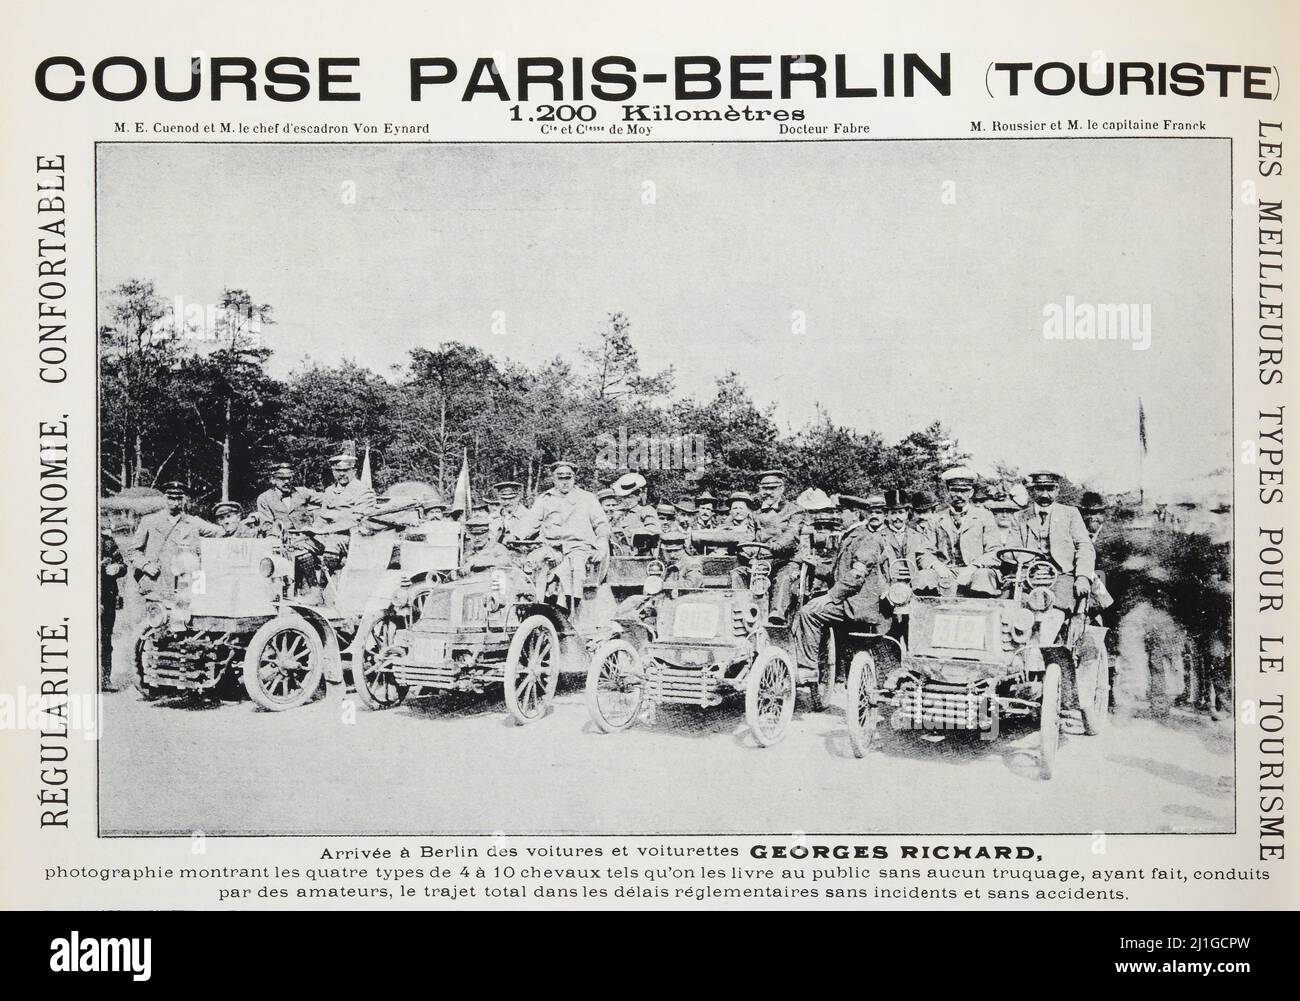 KURS PARIS-BERLIN TOURISTE 1,200 Kilomètres M. E. Cuenod et M. le Chef d'escadron von Eynard Cie et Crese de Moy Docteur Fabre M. Roussicr et M. le capitaine Franck RÉGULARITÉ. ÉCONOMIE. CONFORTABLE Arrivée à Berlin des voitures et voiturettes GEORGES RICHARD, photographie montrant les quatre types de 4 à 10 chevaux tels qu’on les livre au public sans aucun truquage, ayant fait, conduits par des amateurs, le trajet total dansles délais réglementaires sans Incidents et sans uncials.- eng translation : KURS PARIS-BERLIN TOURISTE 1,200 Kilomètres M. E. Cuenod et M. le Chef d'escadron von Stockfoto